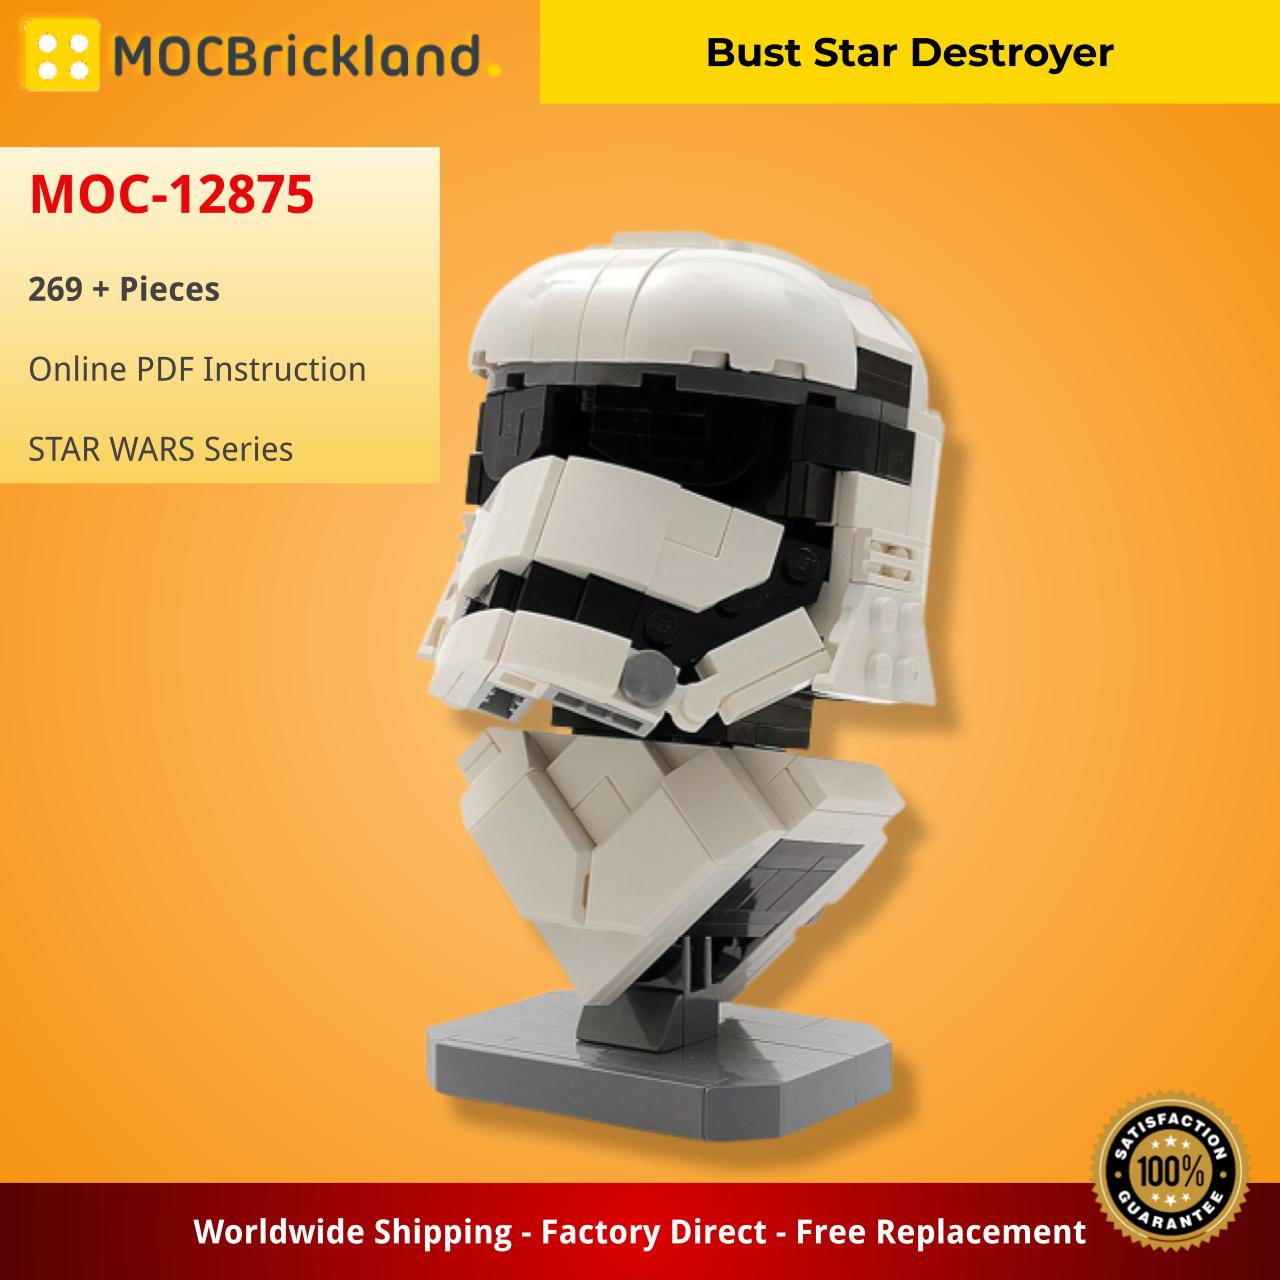 MOCBRICKLAND MOC-12875 Bust Star Destroyer